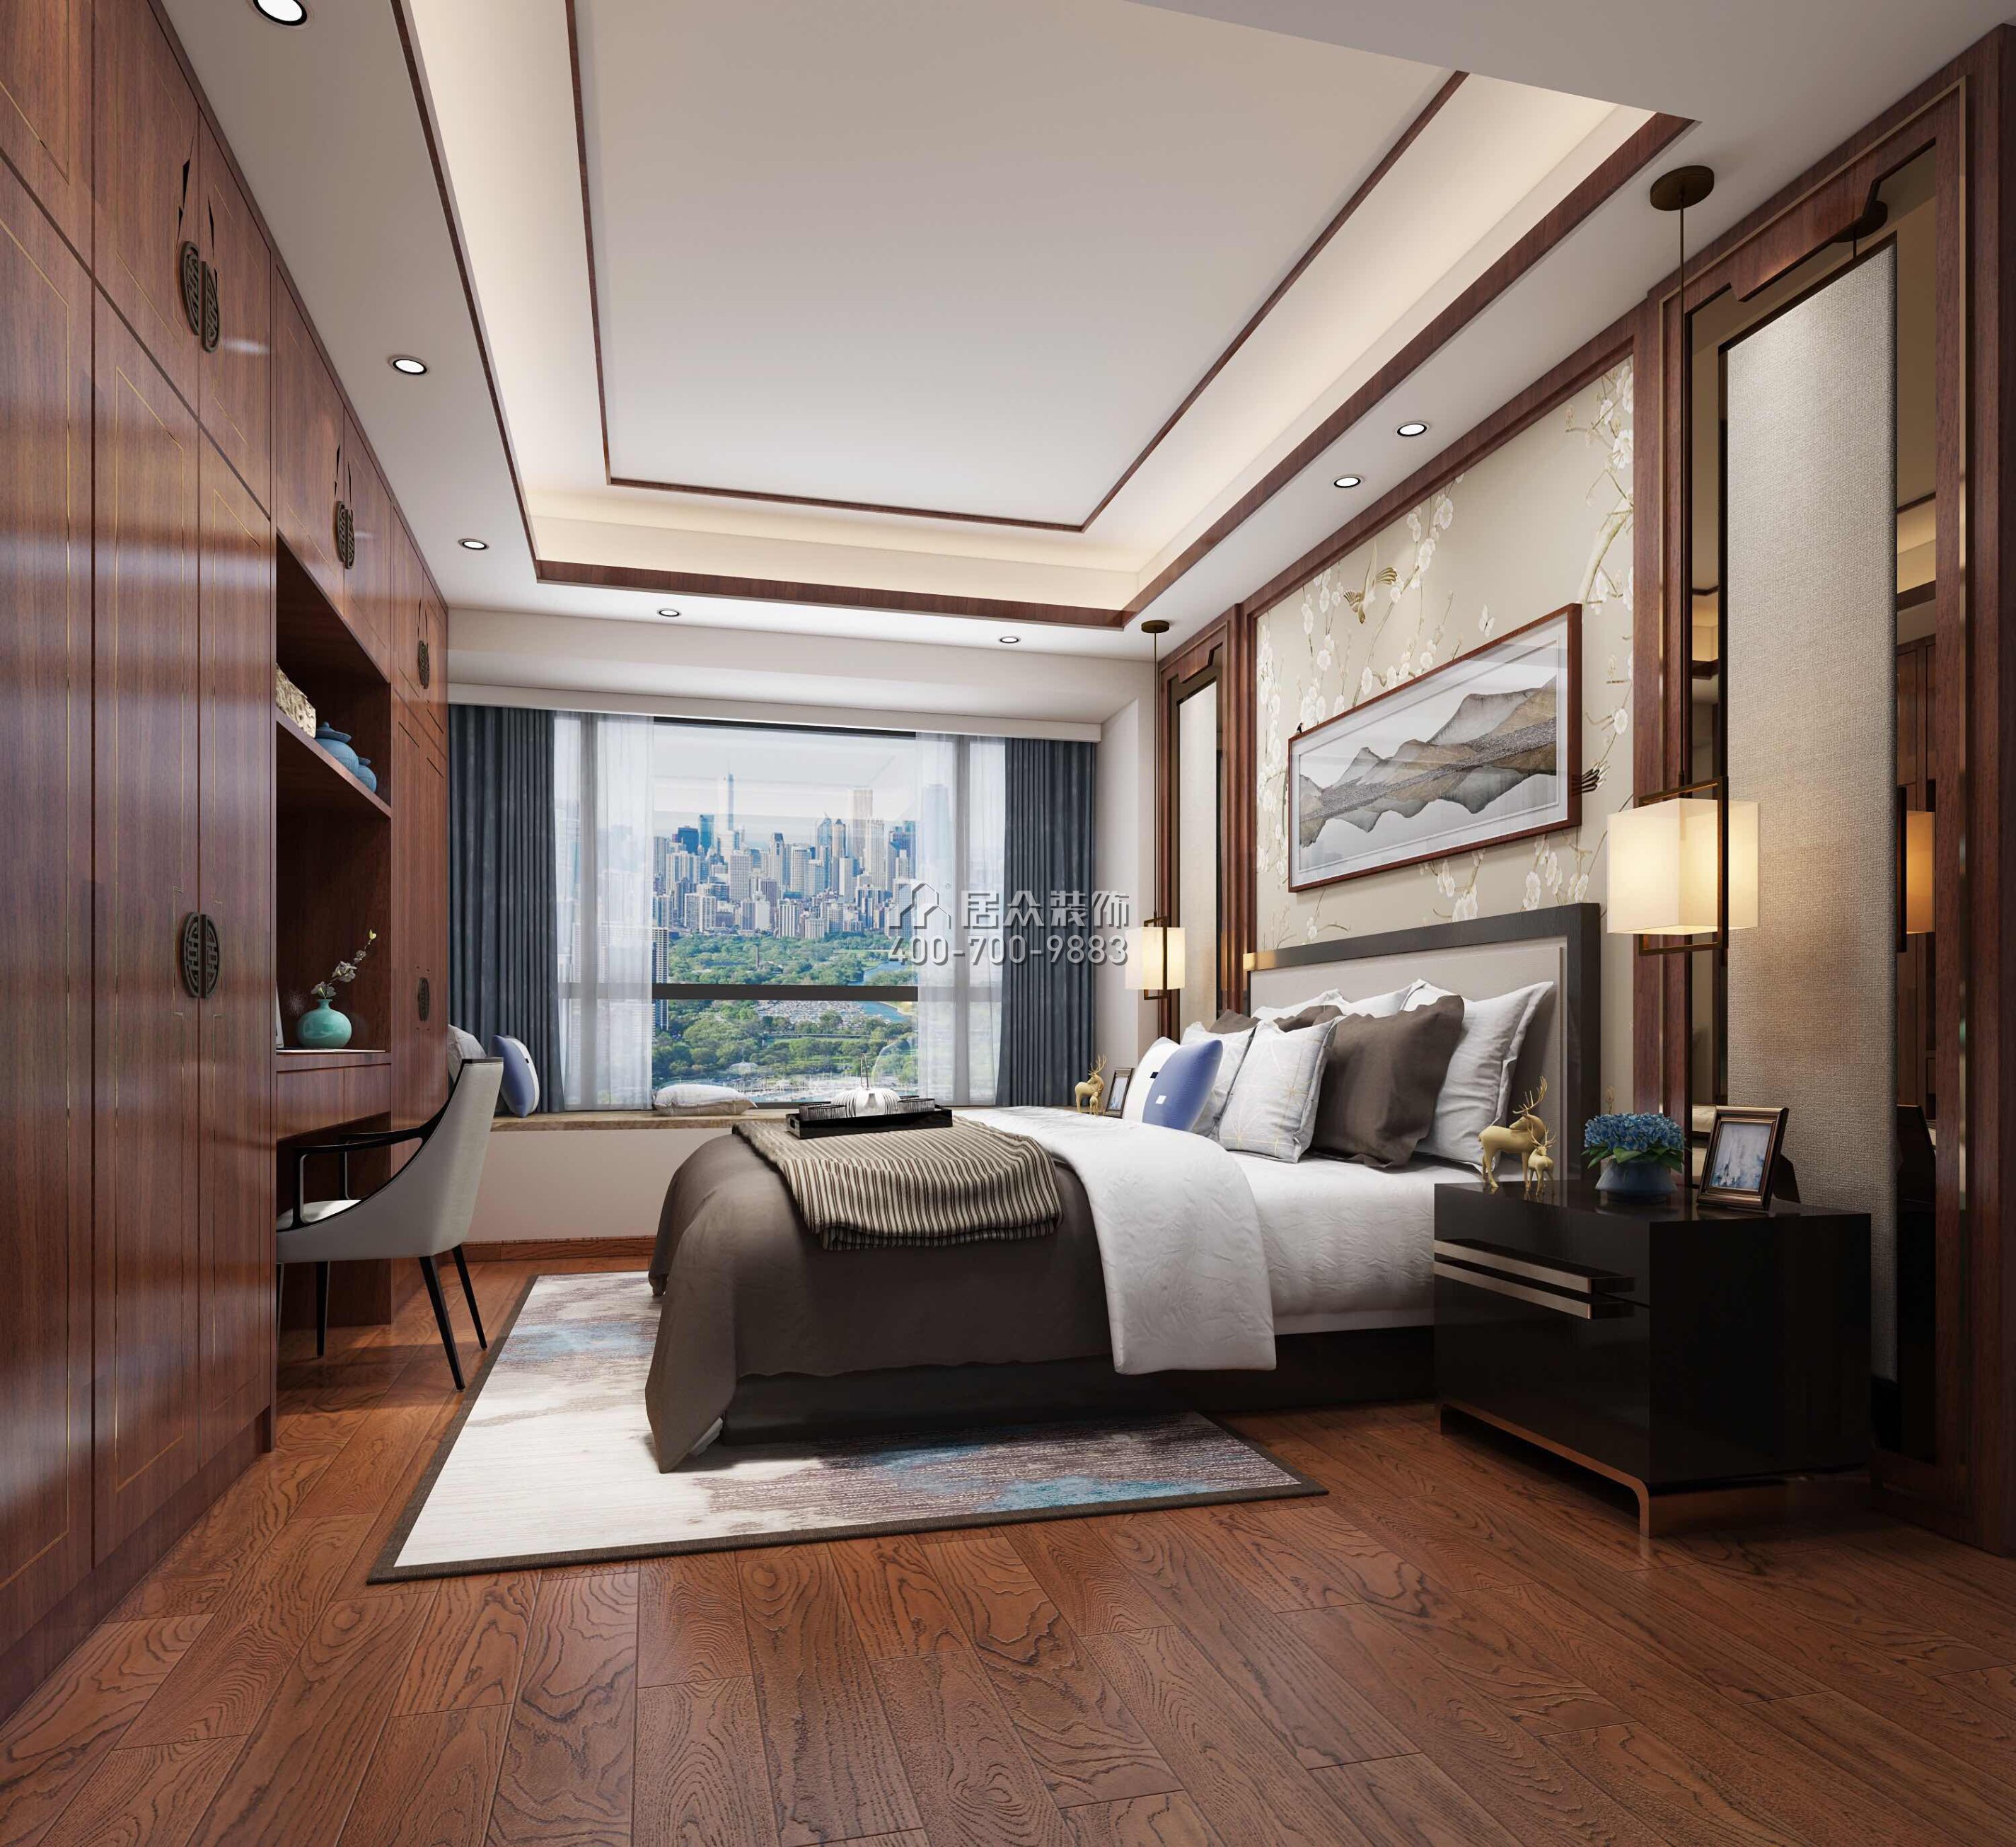 领航城领秀花园160平方米中式风格平层户型卧室装修效果图